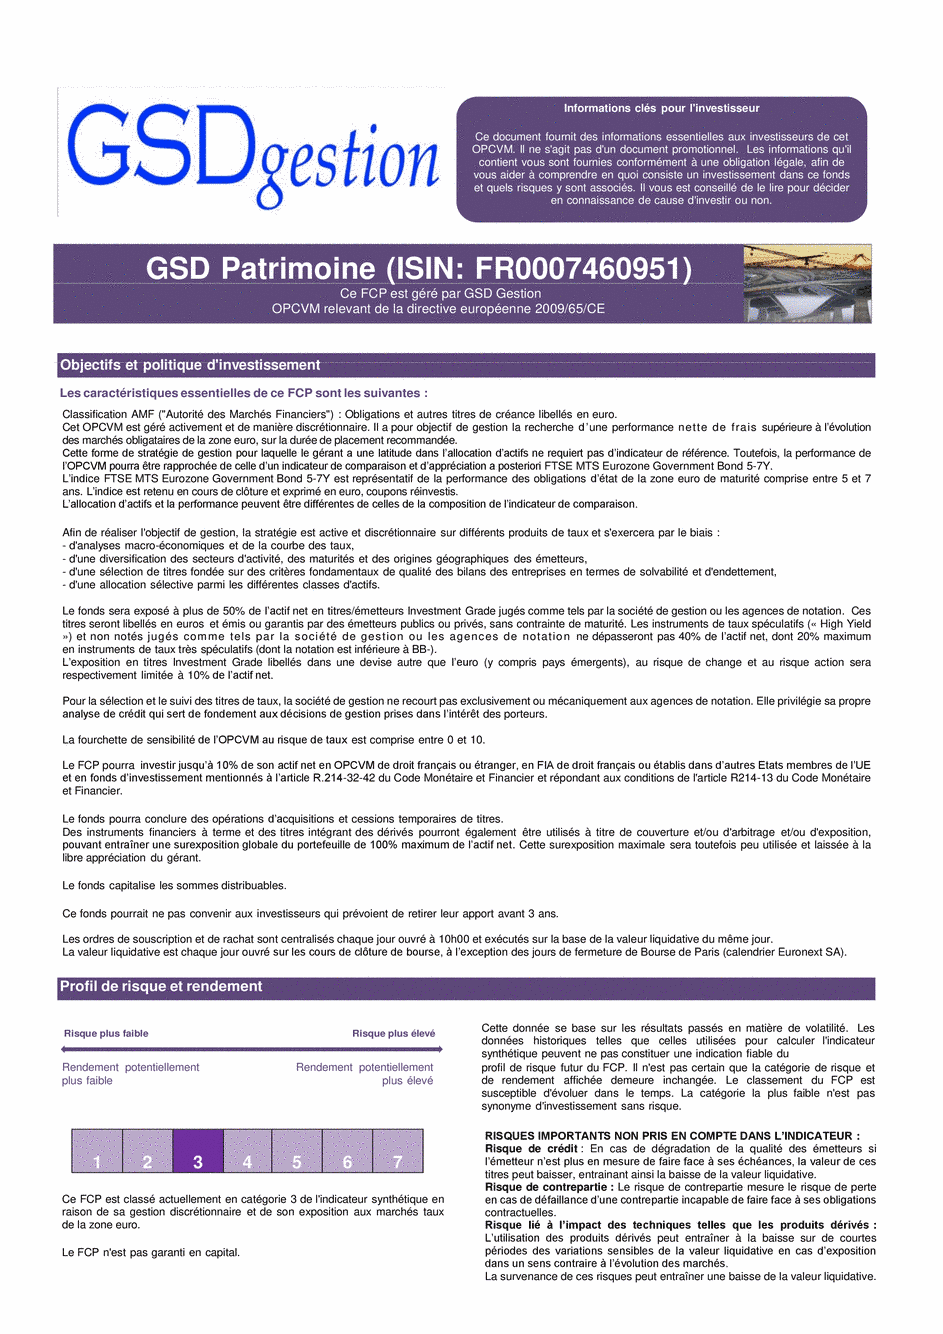 DICI-prospectus Complet GSD Patrimoine - 13/01/2021 - Français